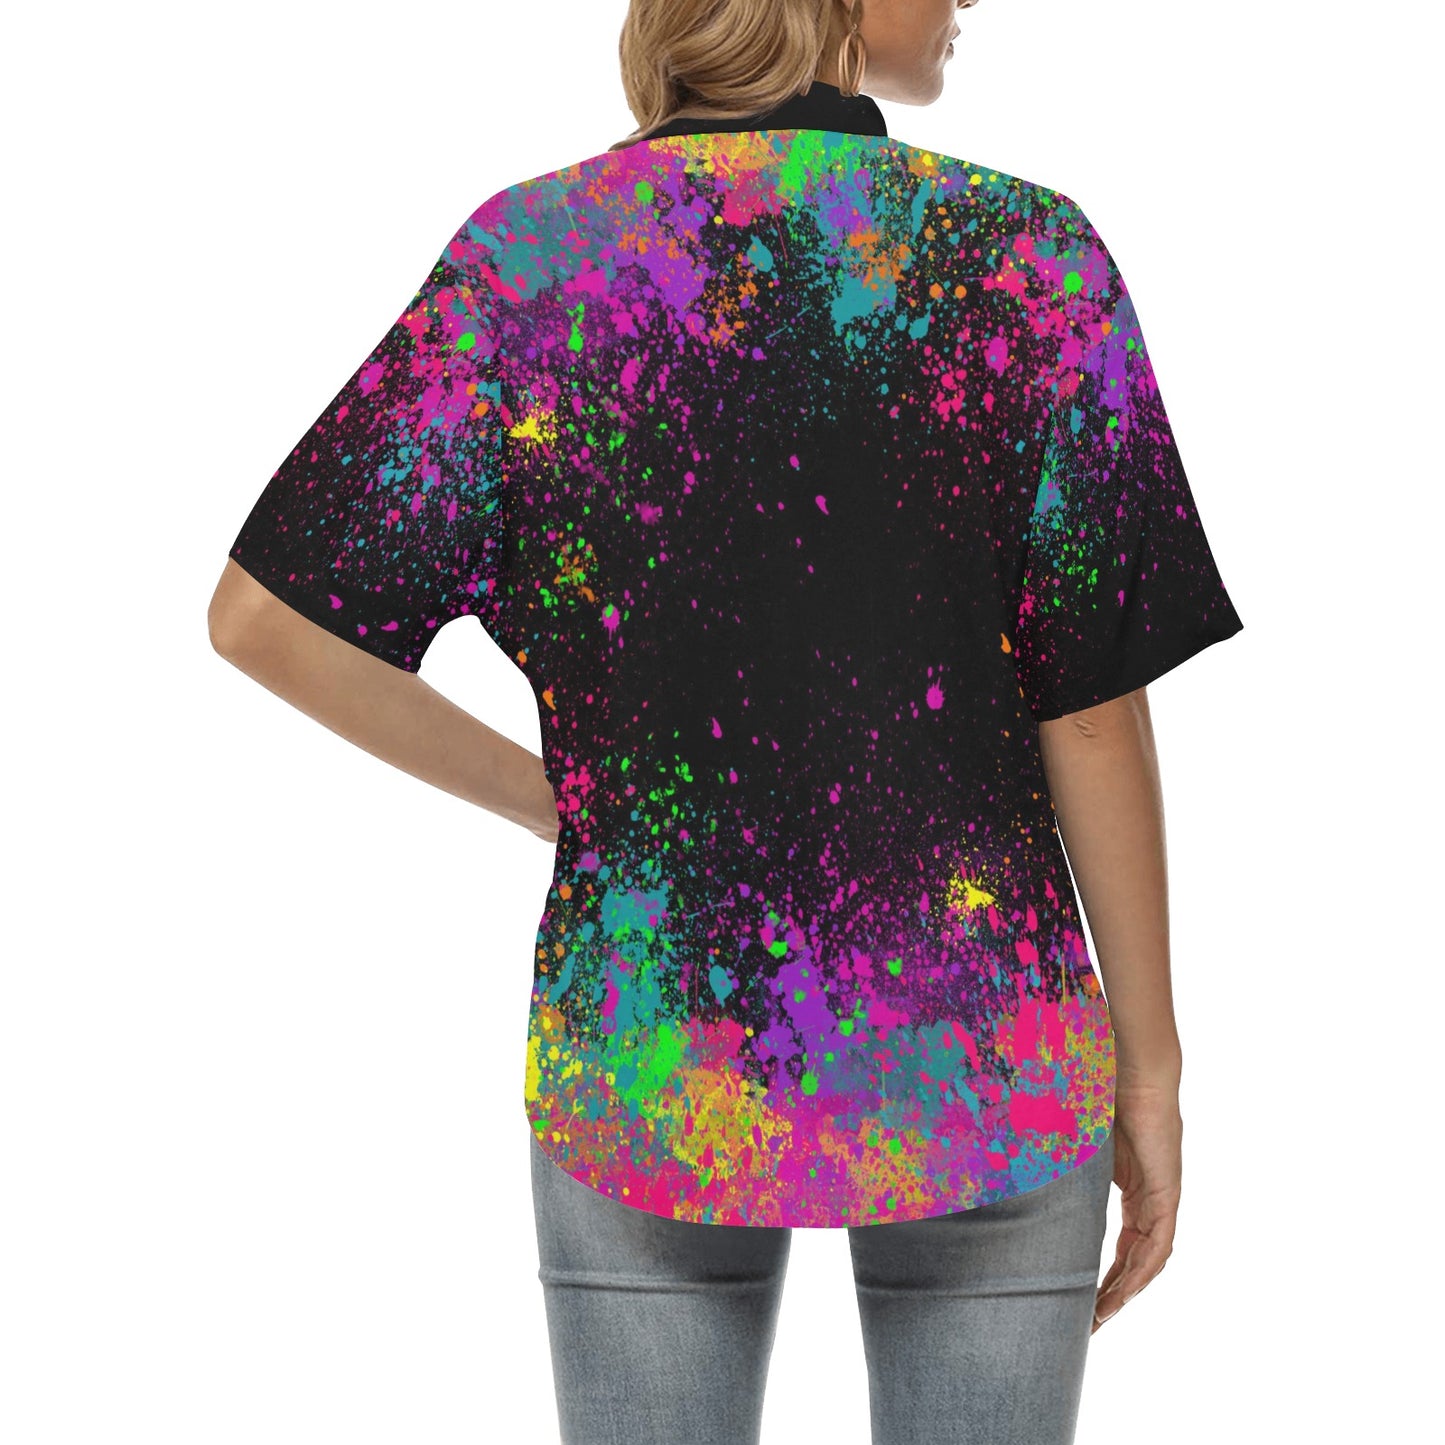 Paint Splatter Hawaiian shirt for face painters